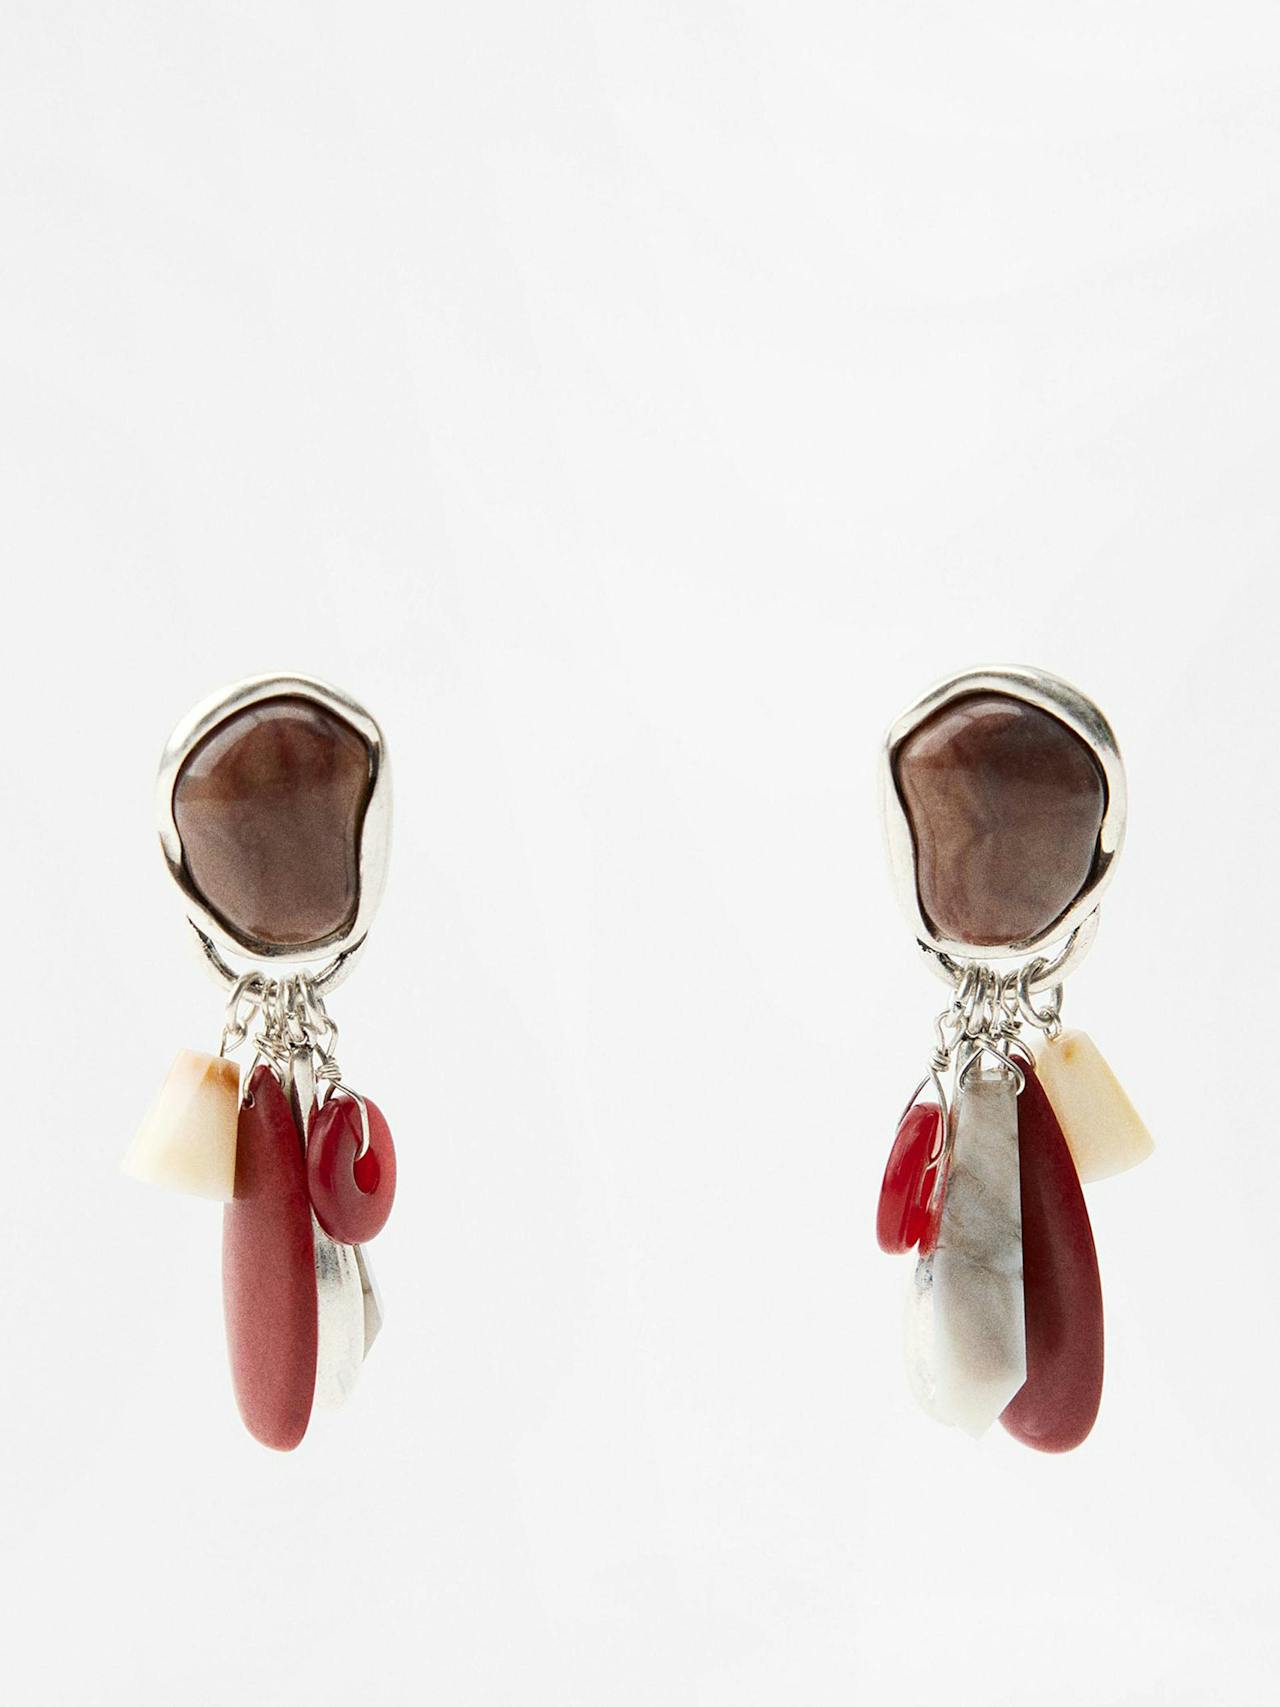 Resin and rhinestone charm earrings